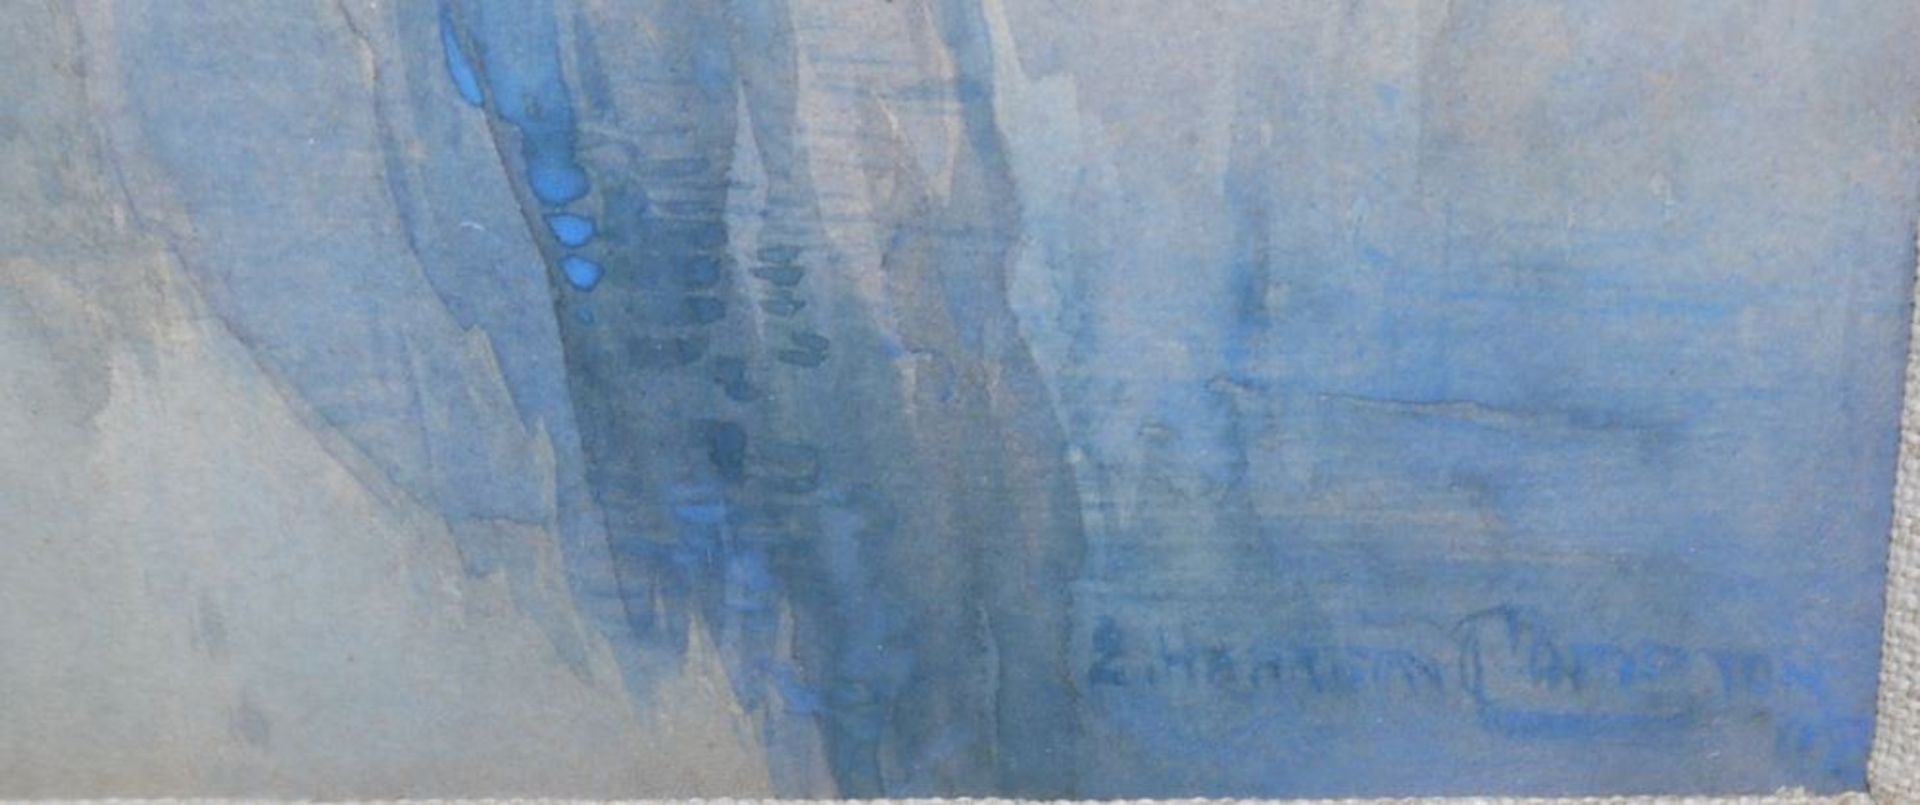 Edward Harrison Compton, Auf dem Königssee, signiertes Aquarell von (19)02, gerahmt - Bild 2 aus 3